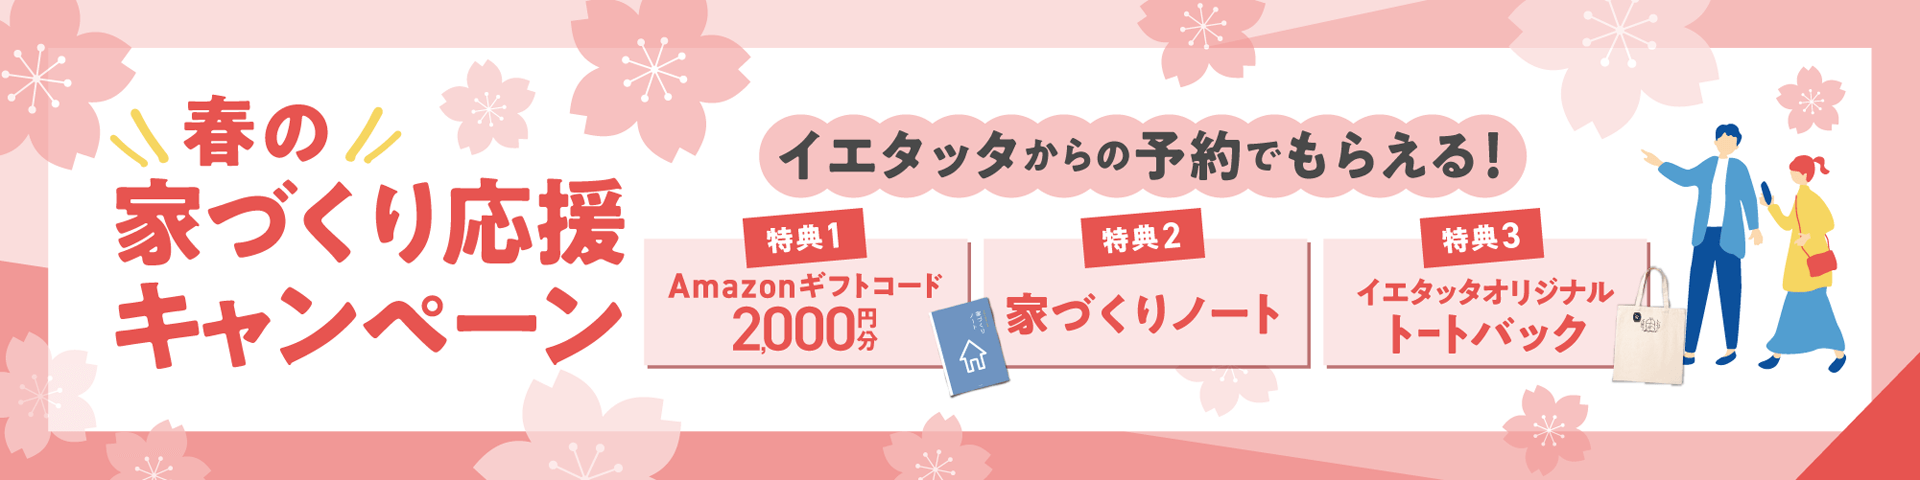 イベント・モデルハウス予約来場でAmazonギフトカード2000円プレゼント